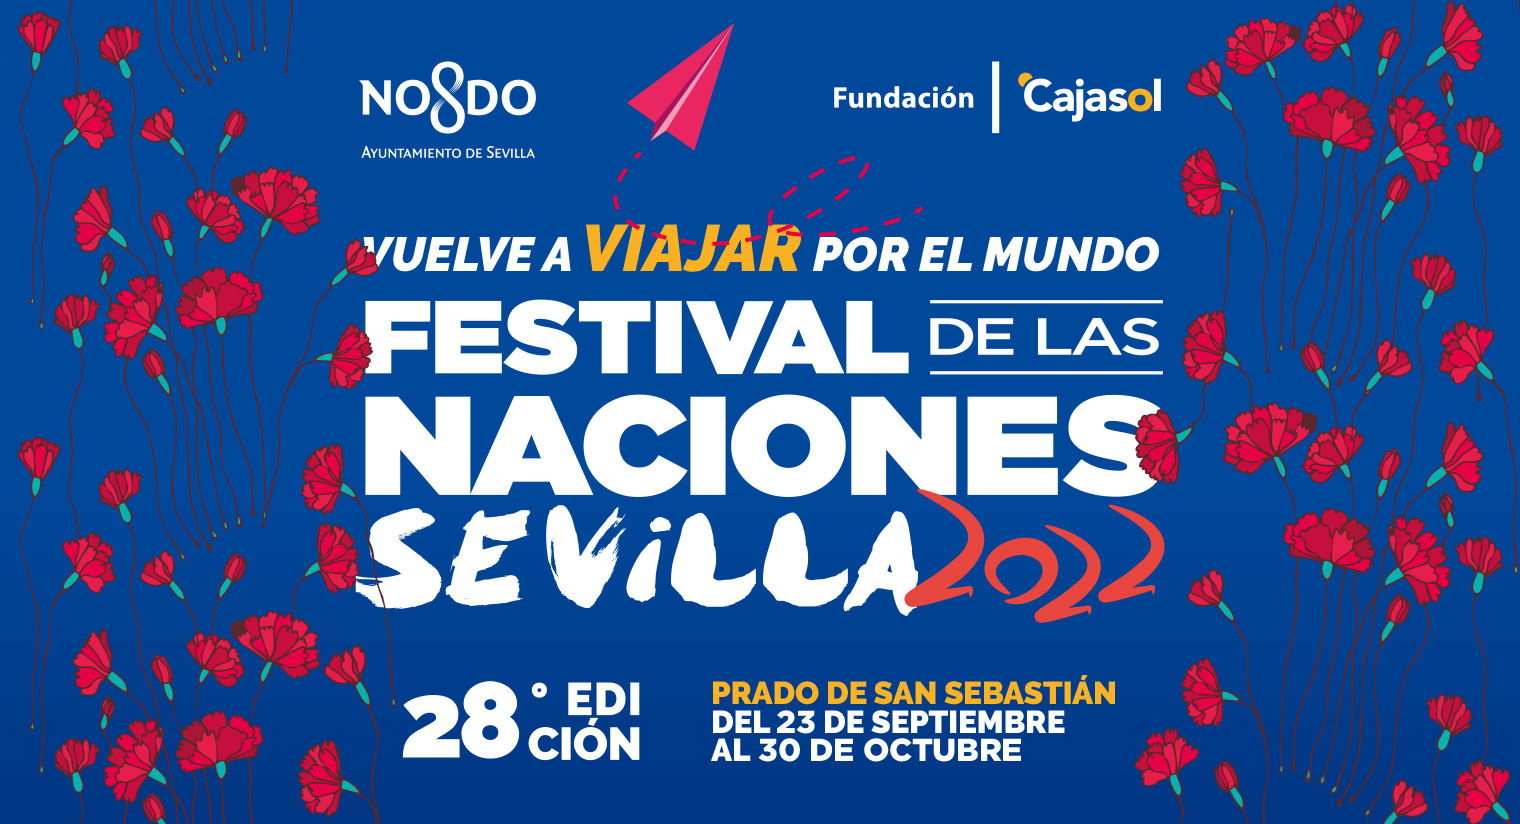 Festival de las Naciones Sevilla 2022